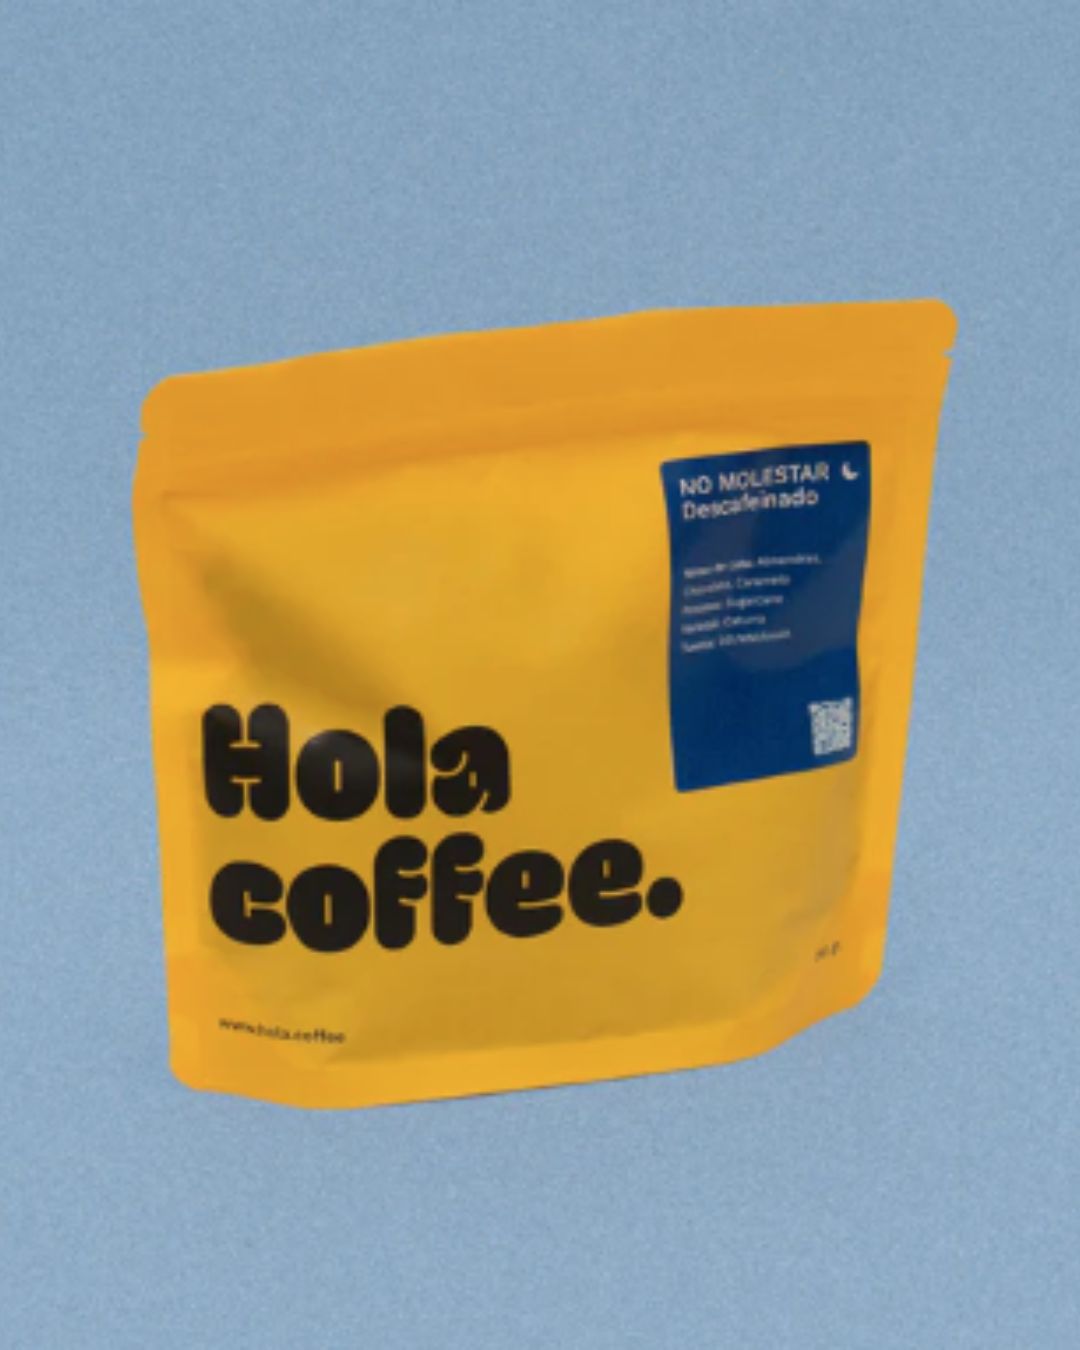 Hola Coffee Descafeinado Colombia - No molestar ☾